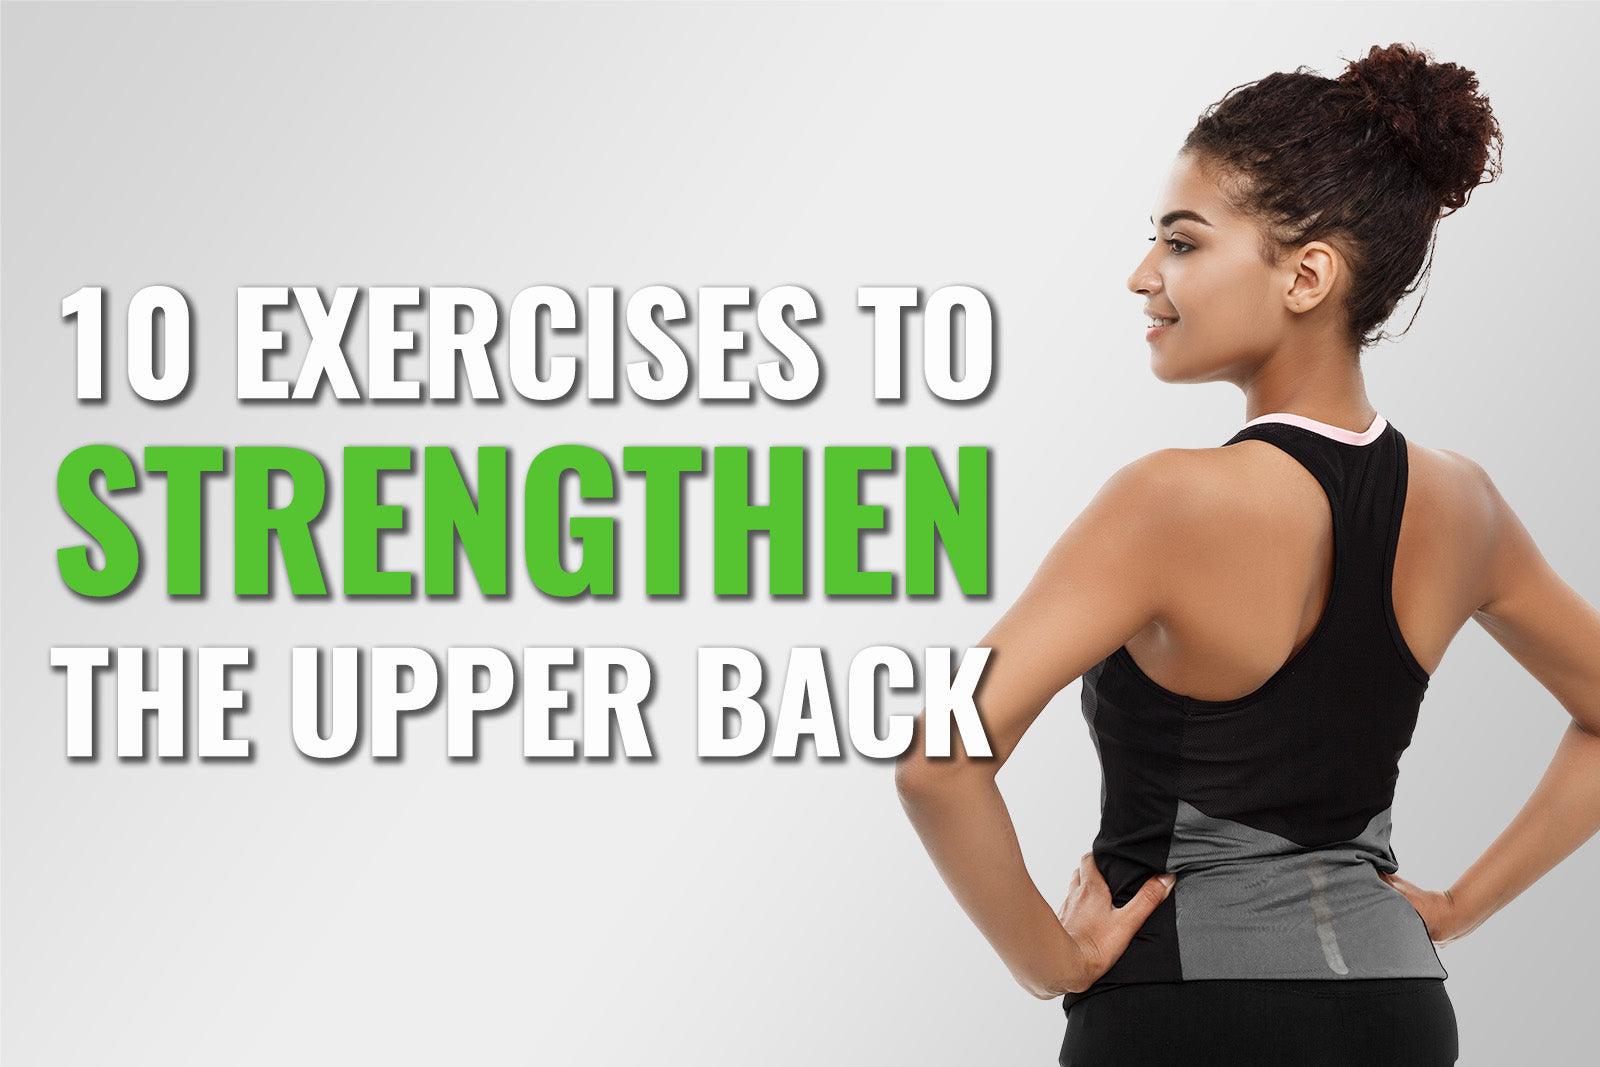 exercises for upper back